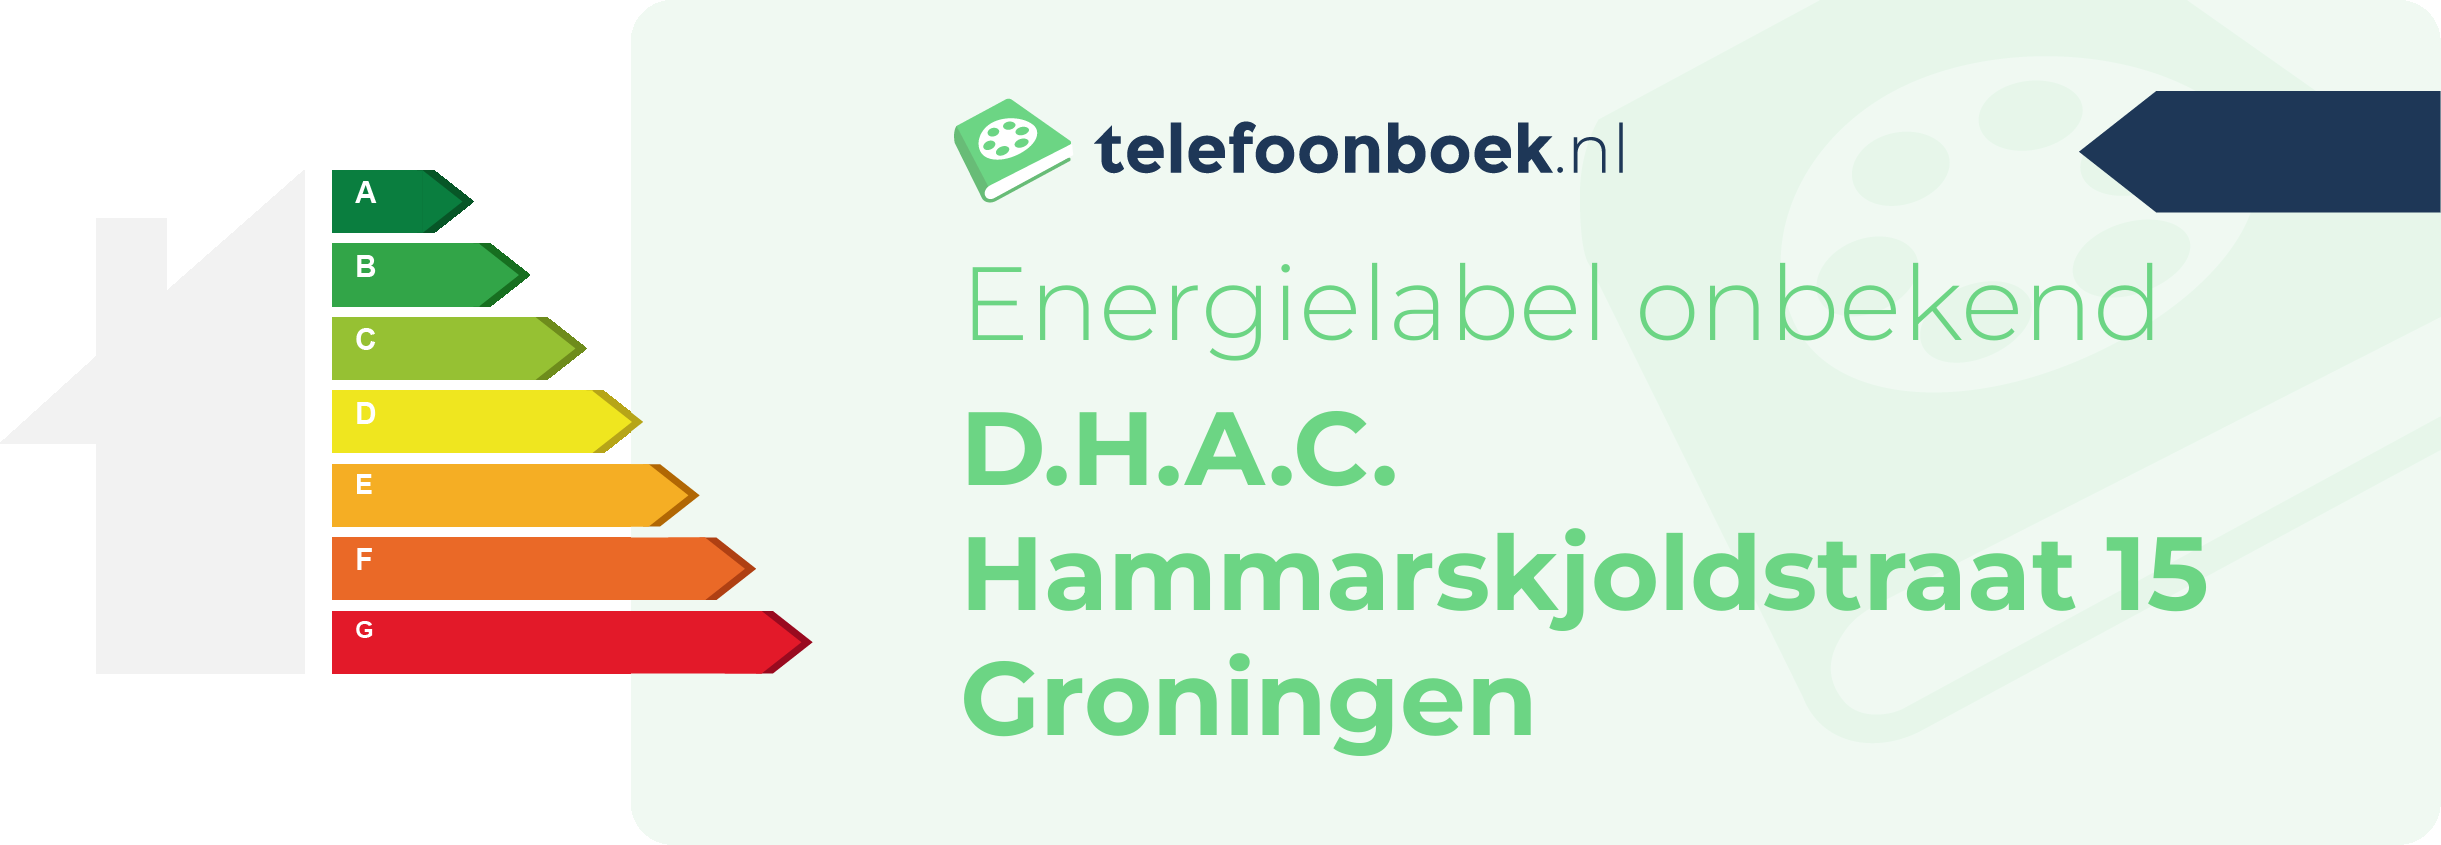 Energielabel D.H.A.C. Hammarskjoldstraat 15 Groningen